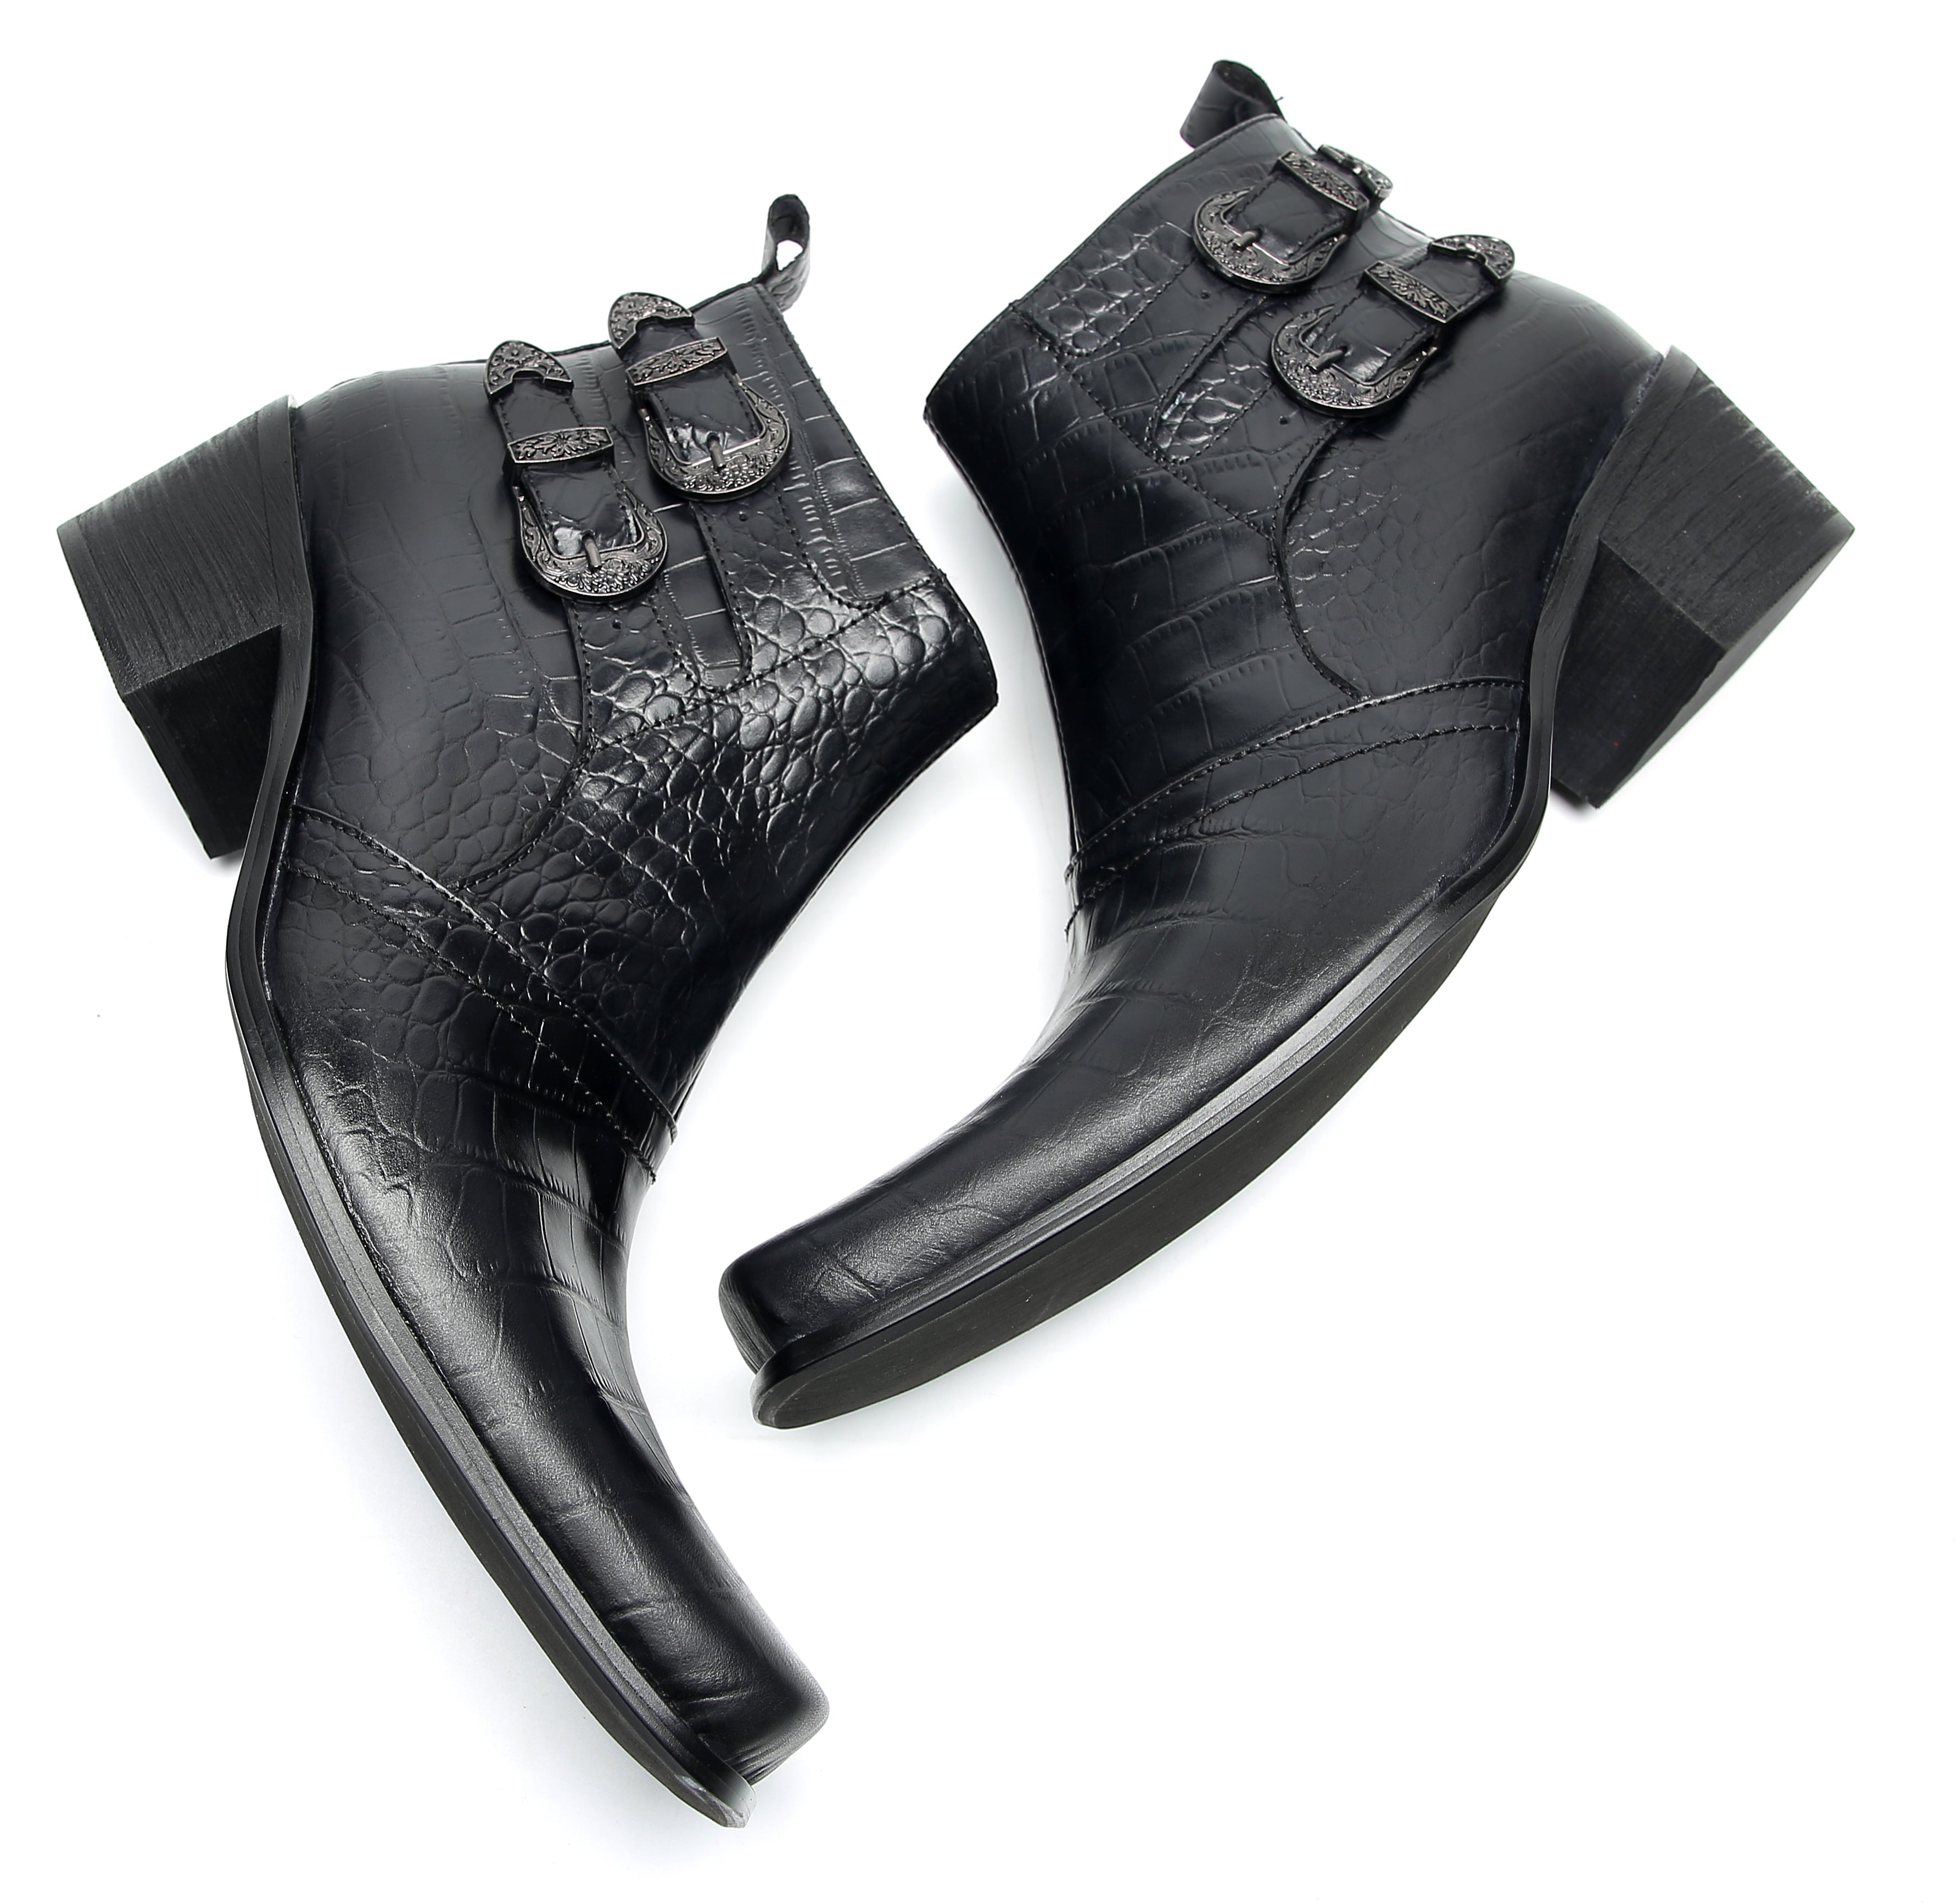 Men's Casual Plain Toe Double Buttons Boots